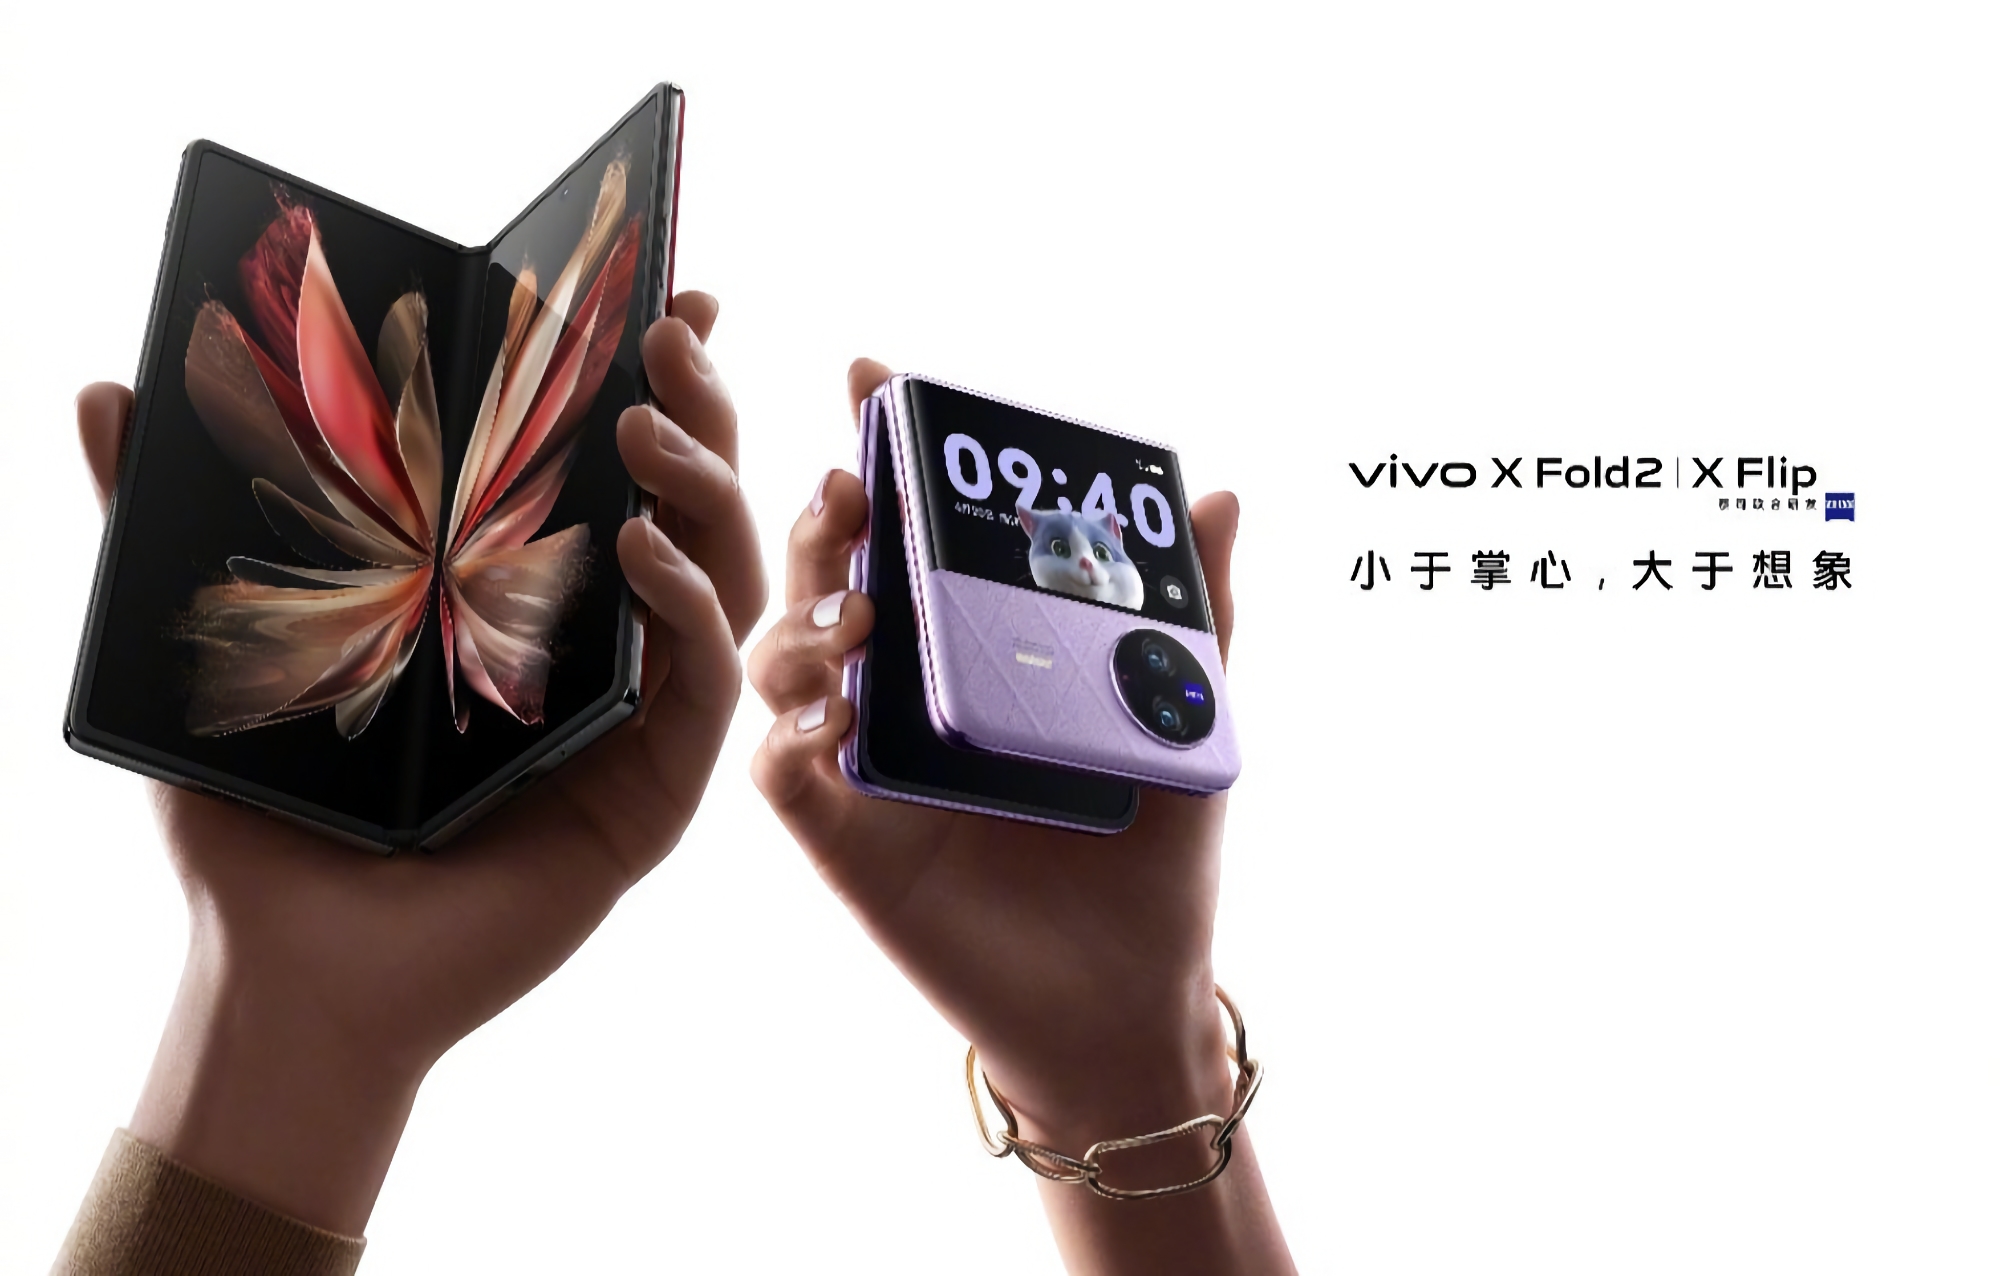 C'est officiel : le vivo X Fold 2 et le vivo X Flip, smartphone pliable, seront présentés le 20 avril.